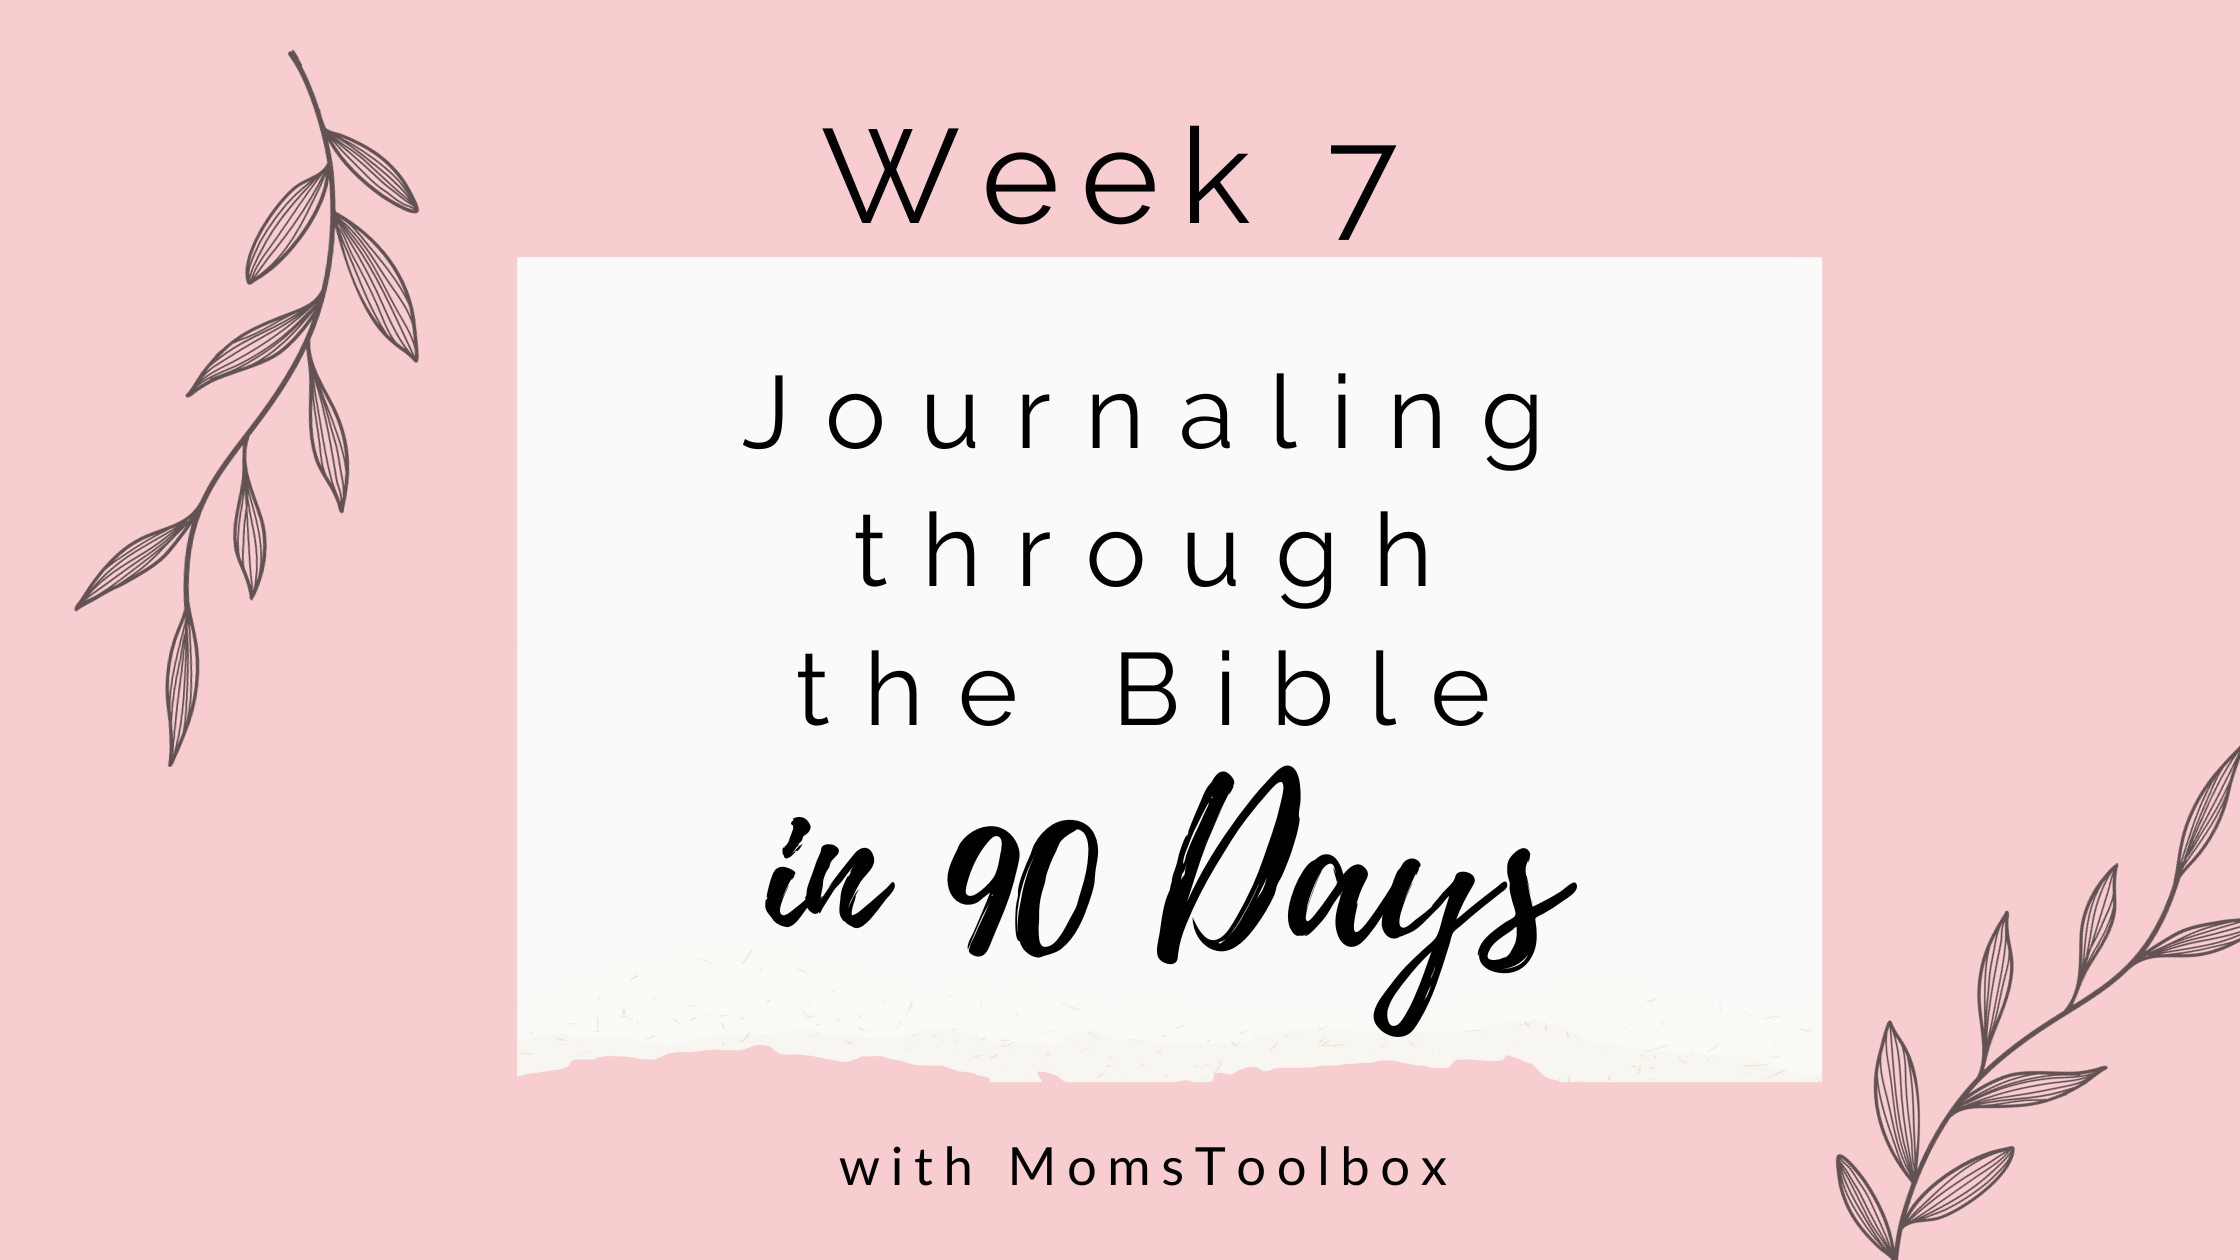 Journaling through the Bible in 90 days: Week 7